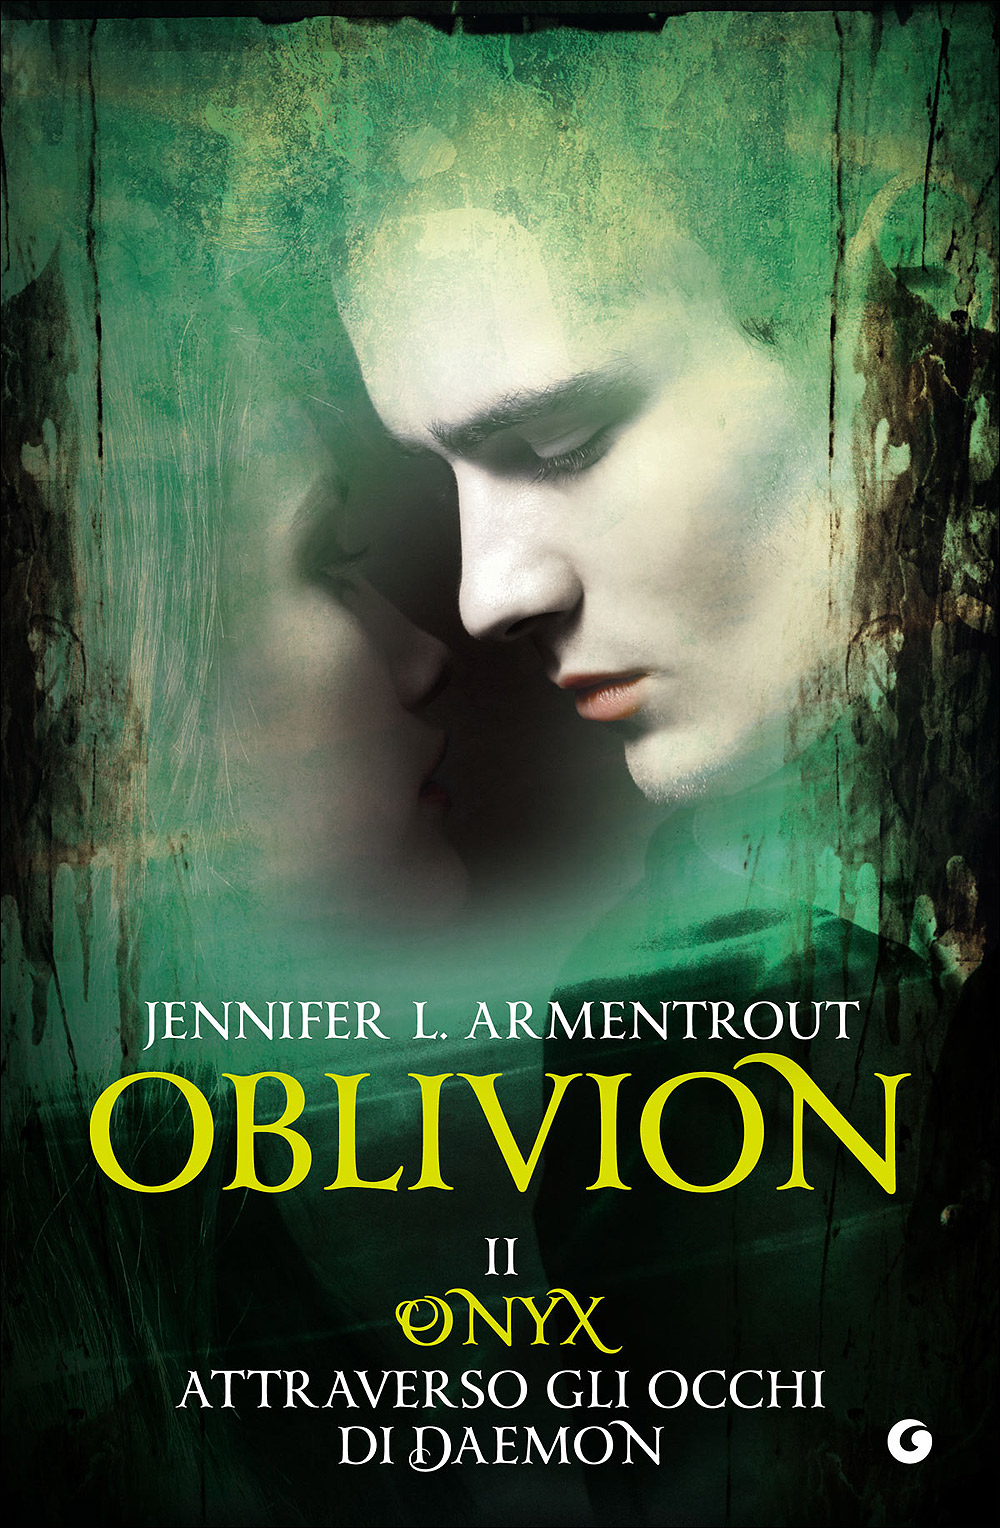 Oblivion II. Onyx attraverso gli occhi di Daemon- le tazzine di yoko